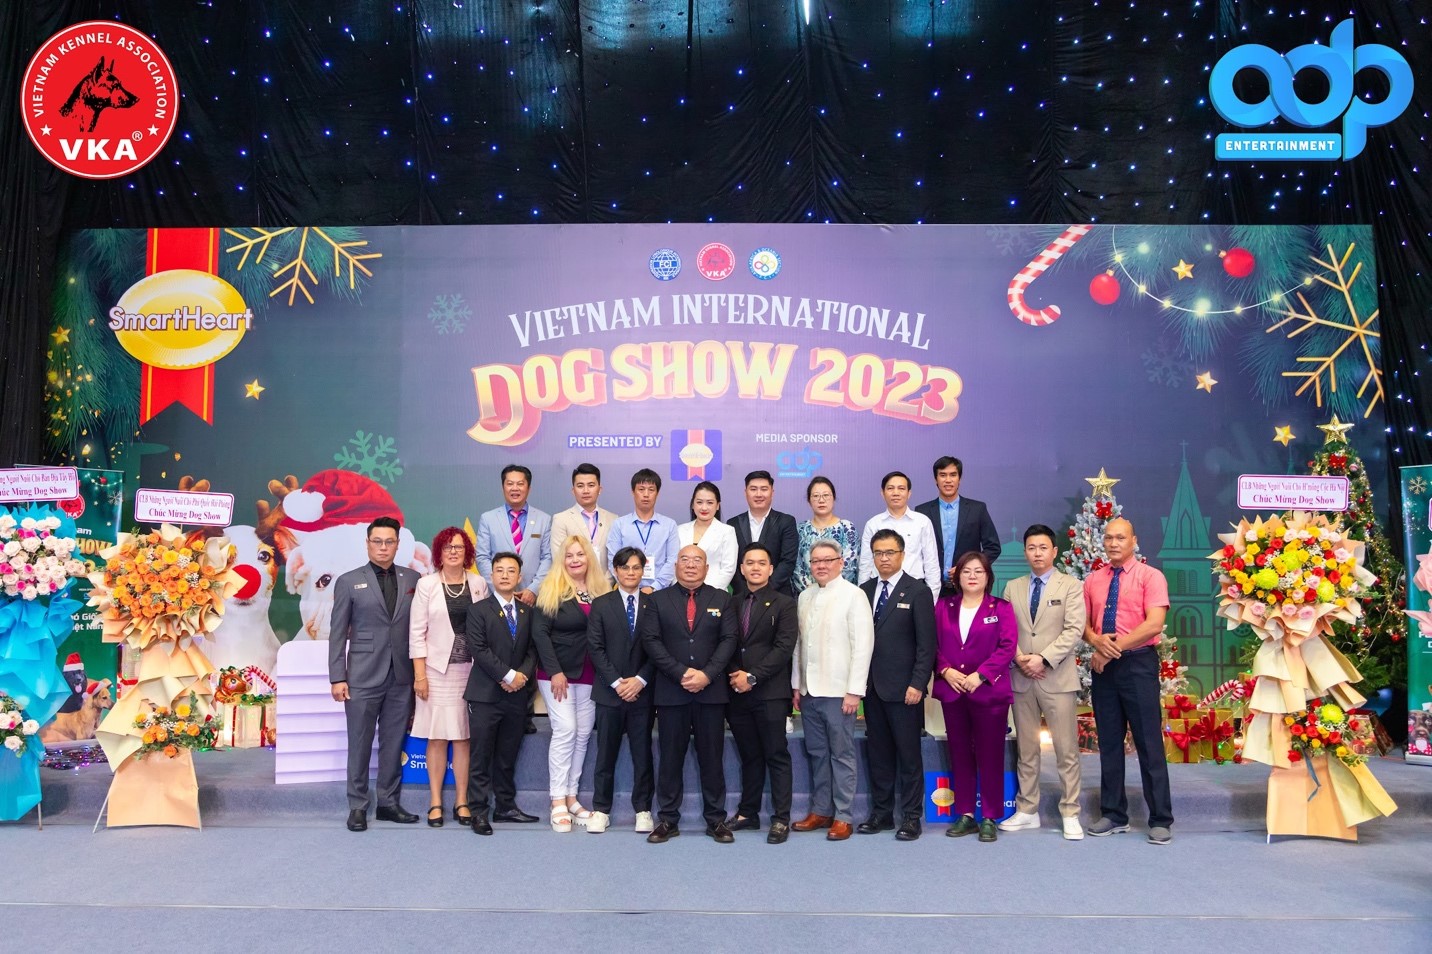 Xã hội - Vietnam International Dog Show 2023 - Hiệp hội Những Người Nuôi Chó Giống Việt Nam (VKA) với phần trình diễn bùng nổ, bứt phá, mãn nhãn người xem